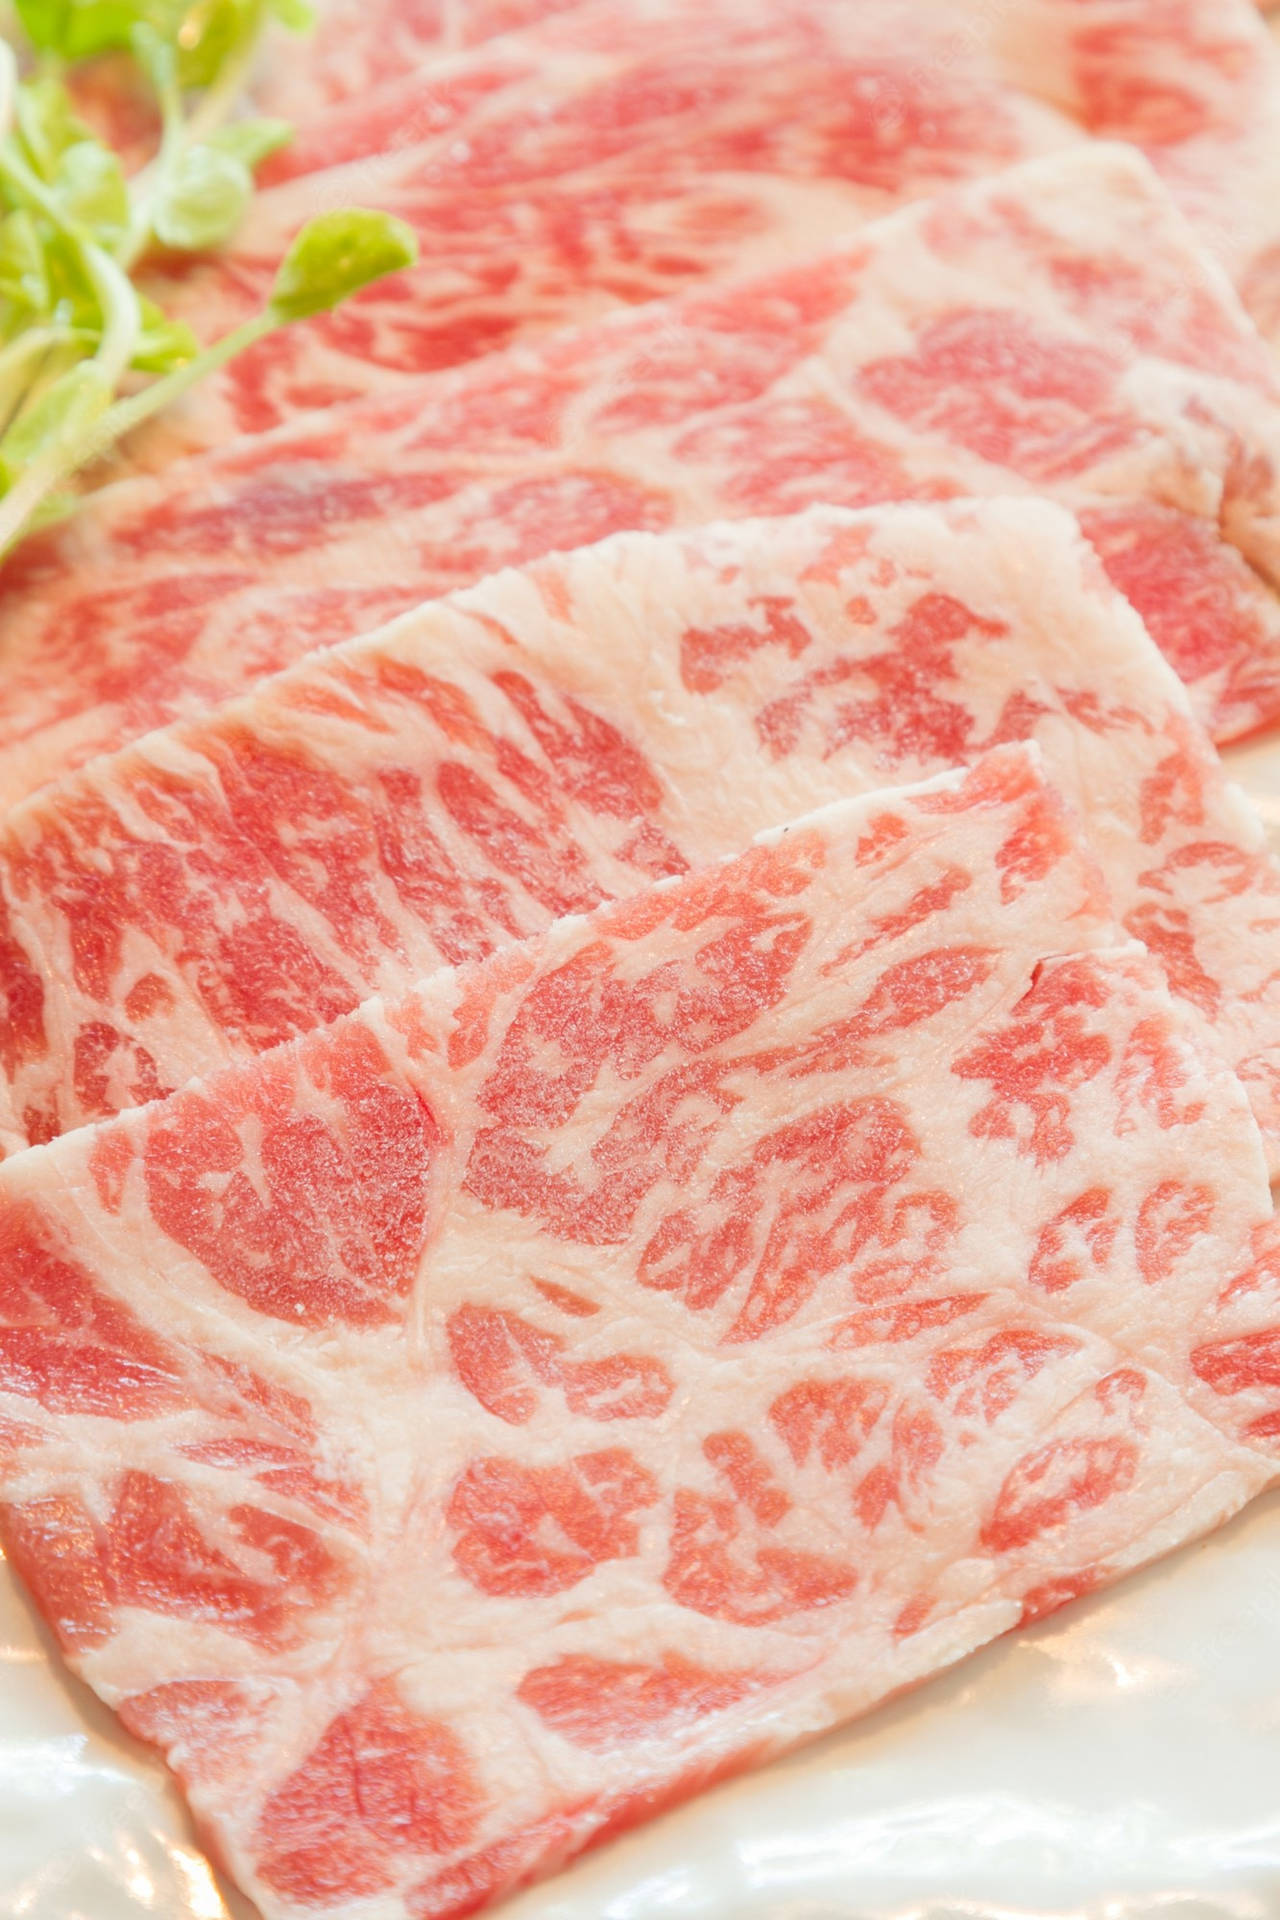 Exquisite Kobe Beef Slices Wallpaper